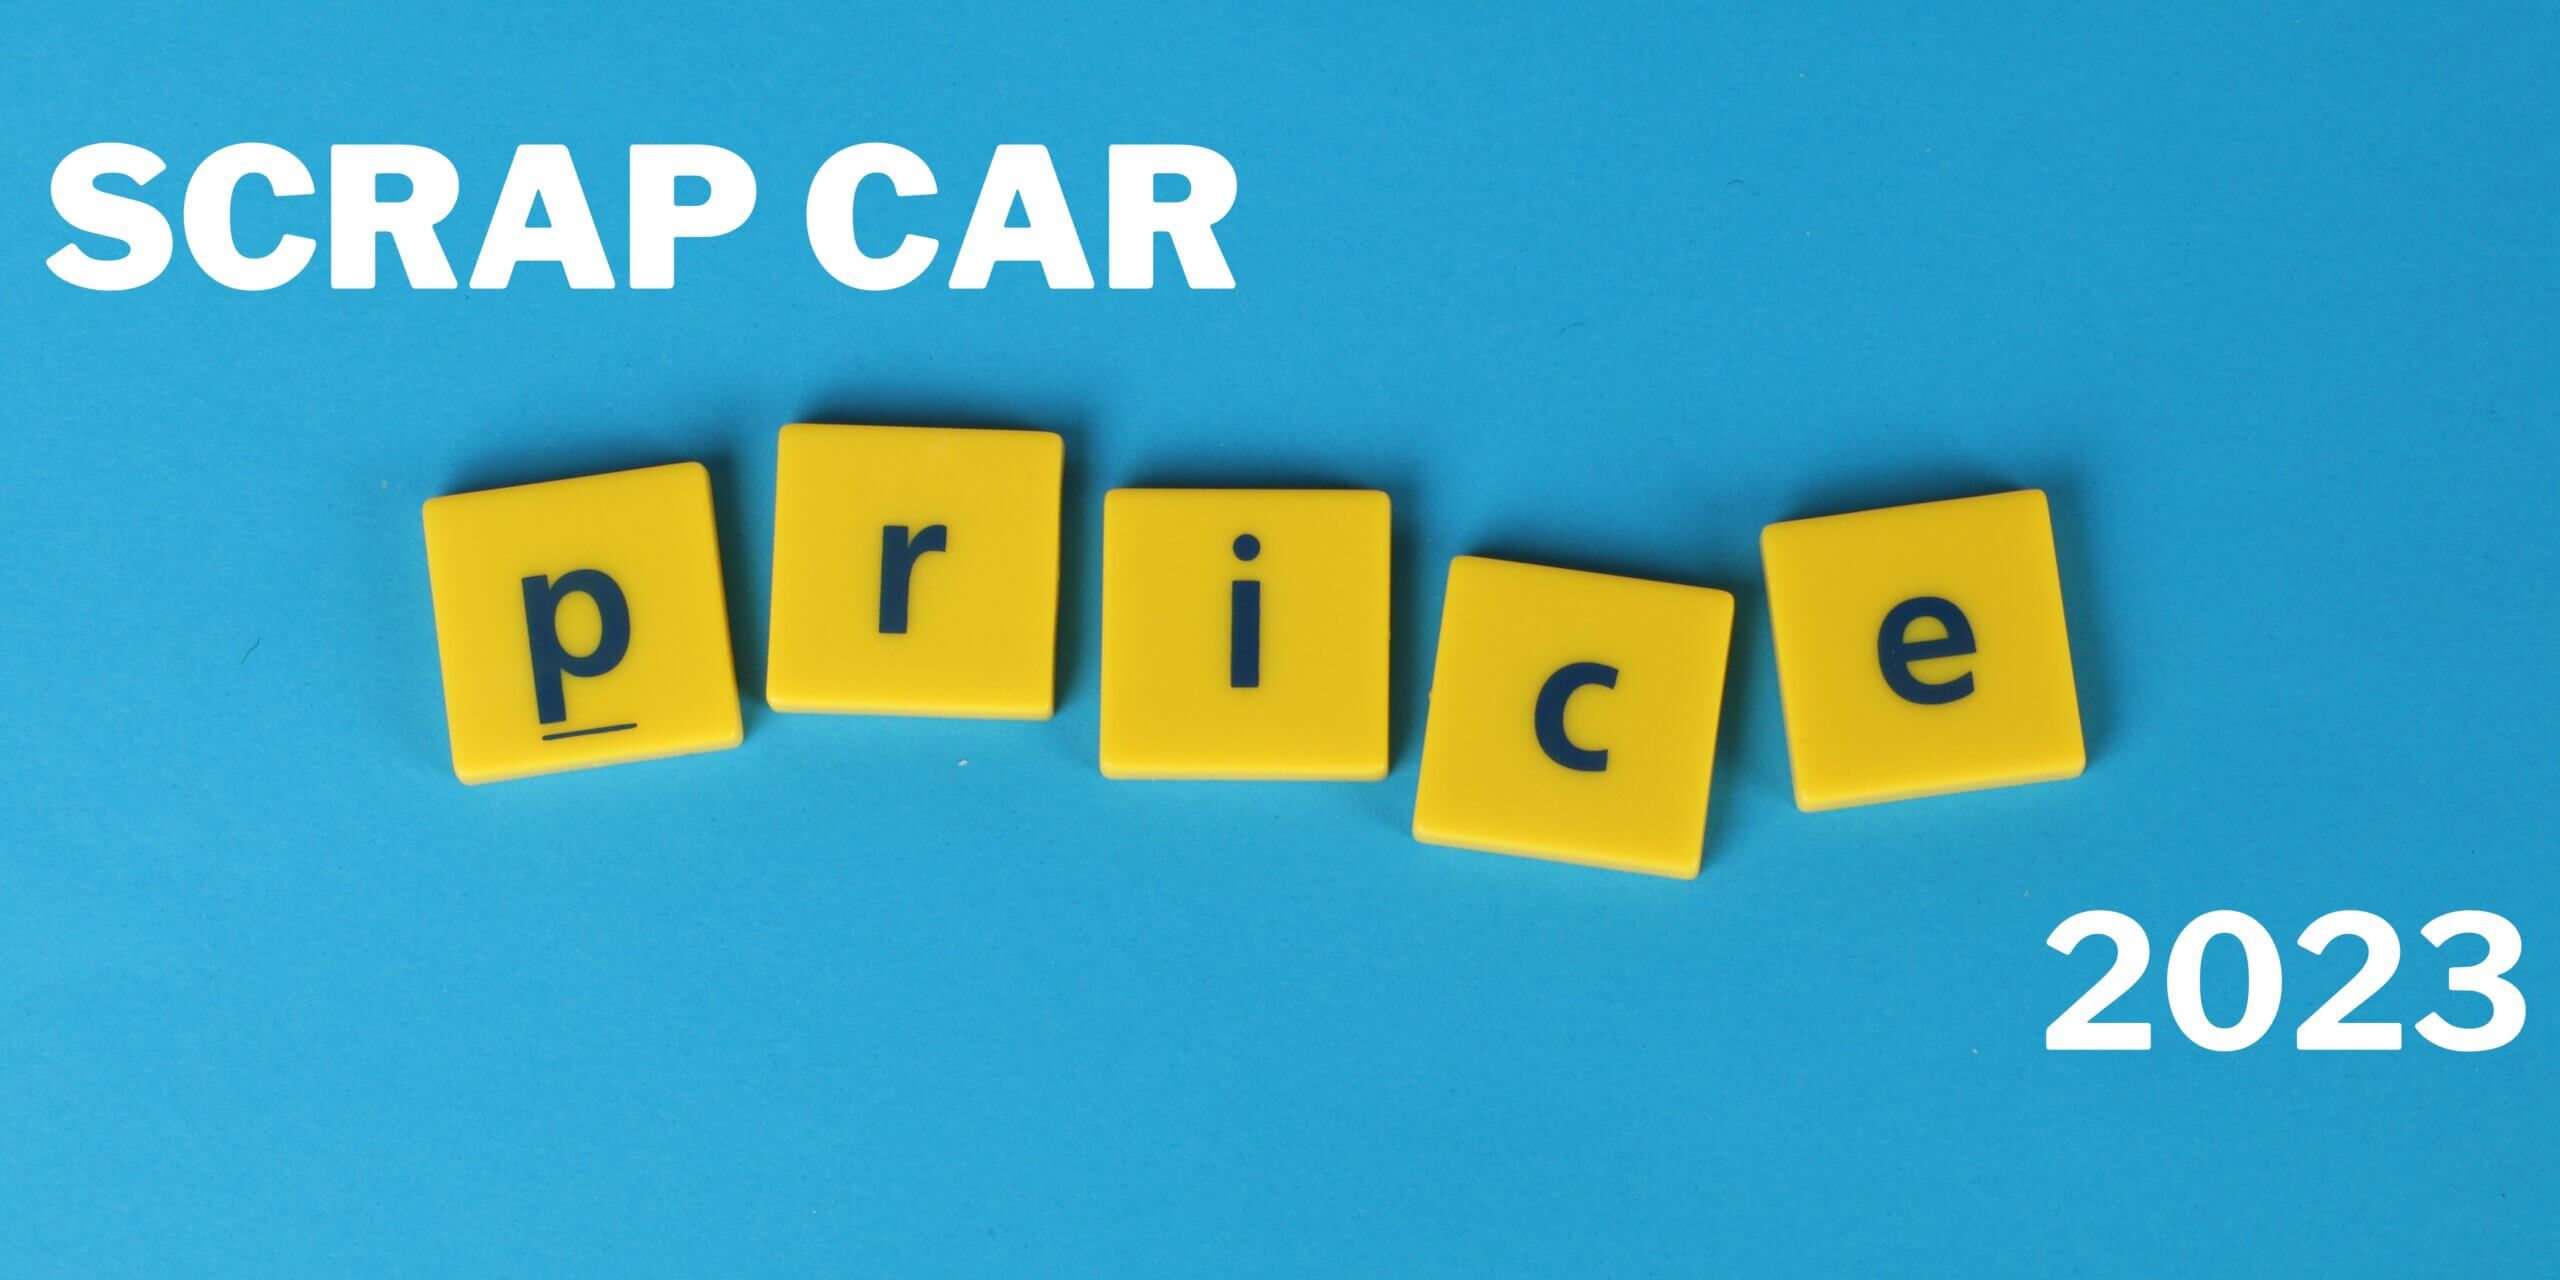 SCRAP CAR PRICES